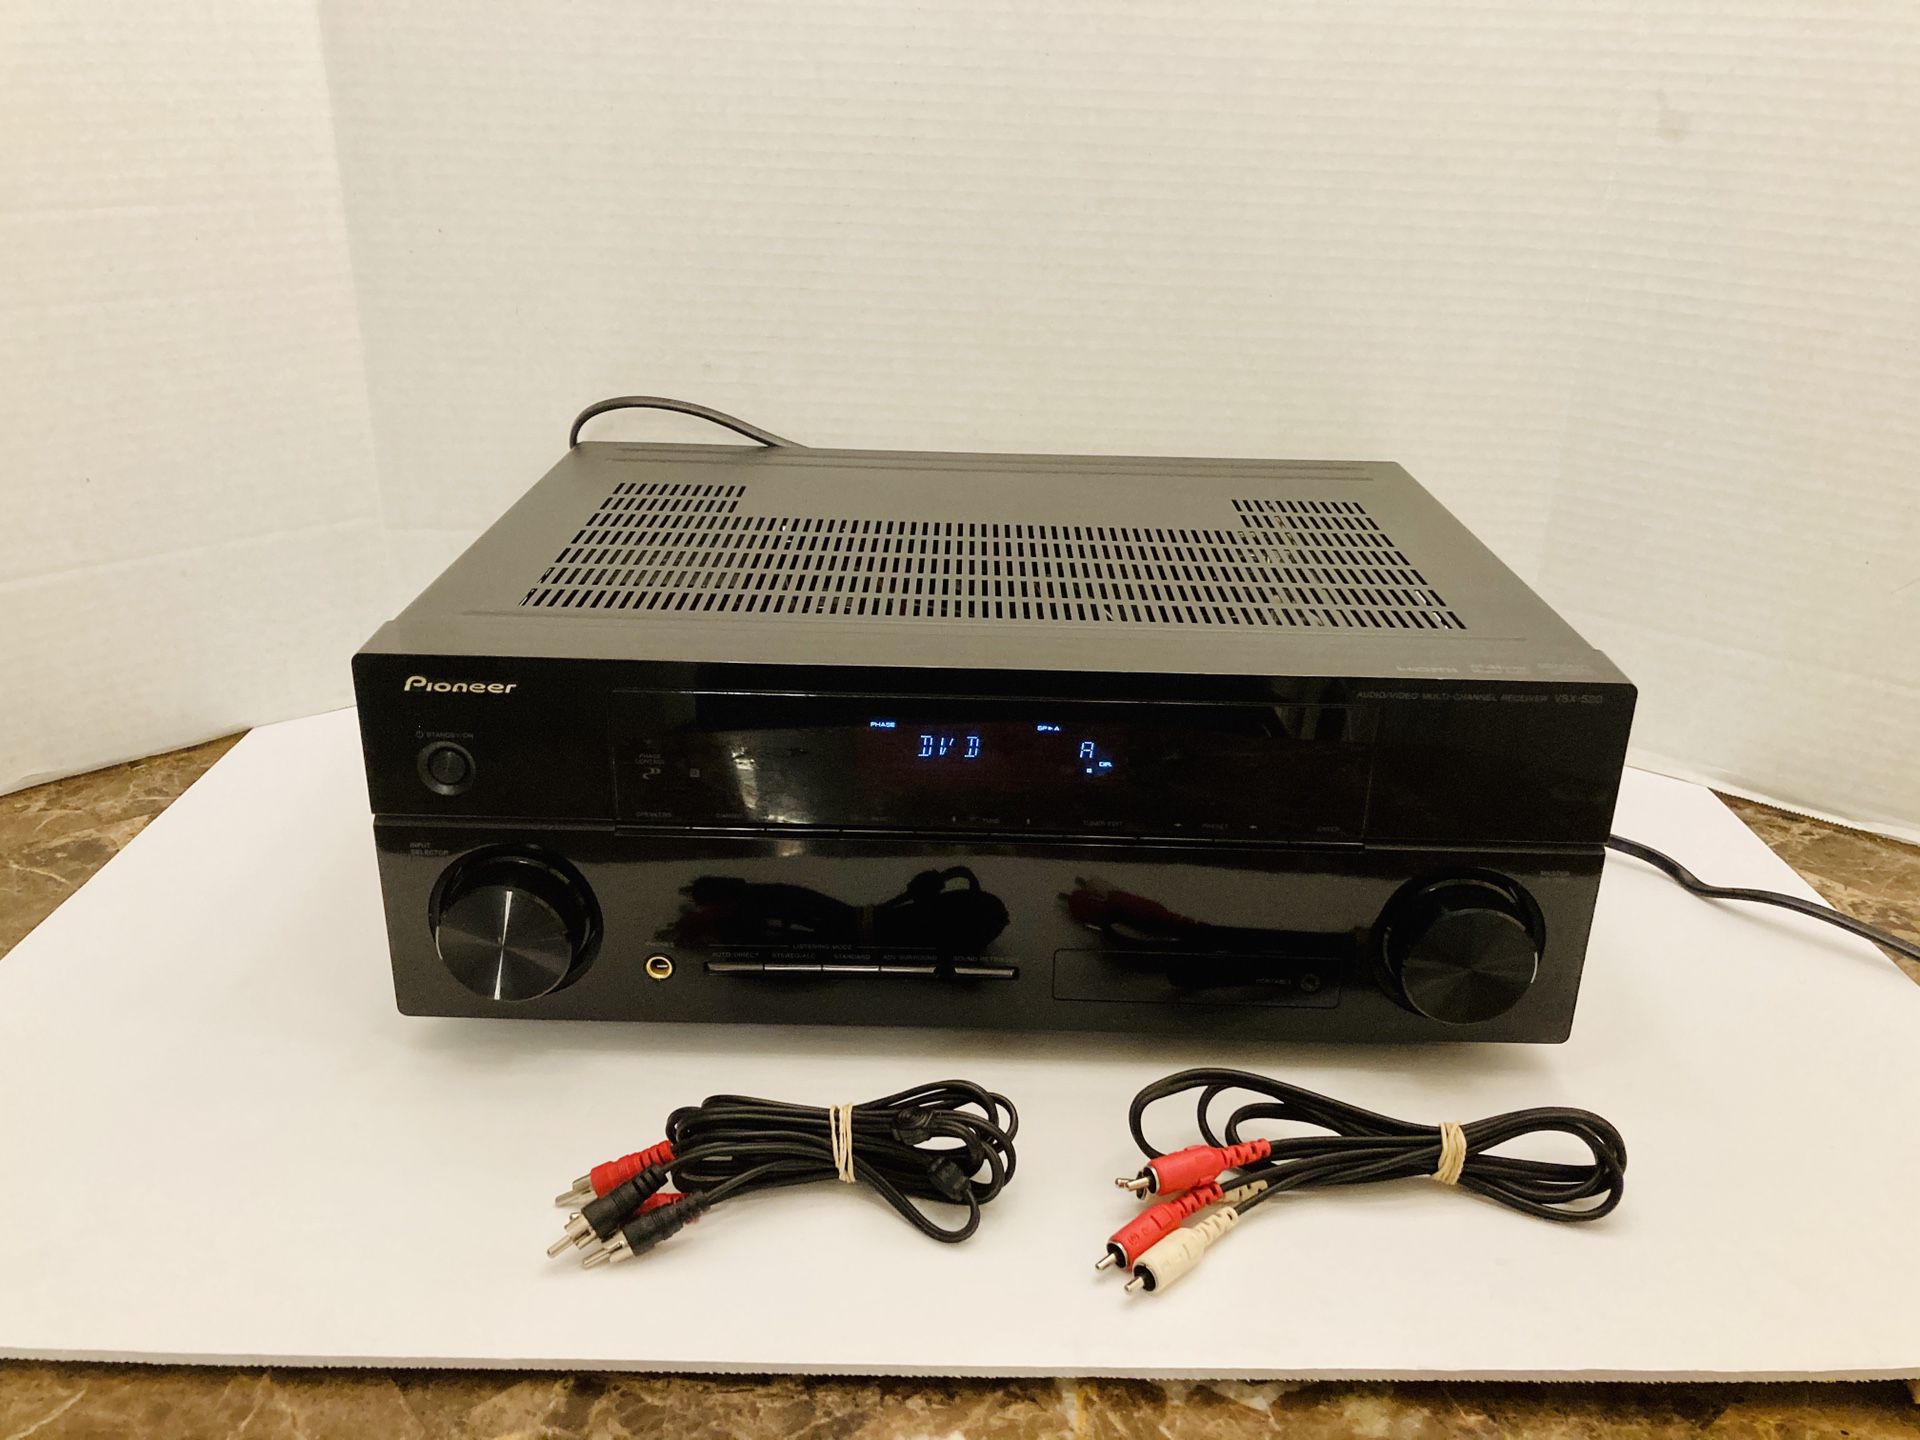 Pioneer VSX-520-K 240 Watt 5.1 Home Theater Surround Sound Receiver Glossy Black